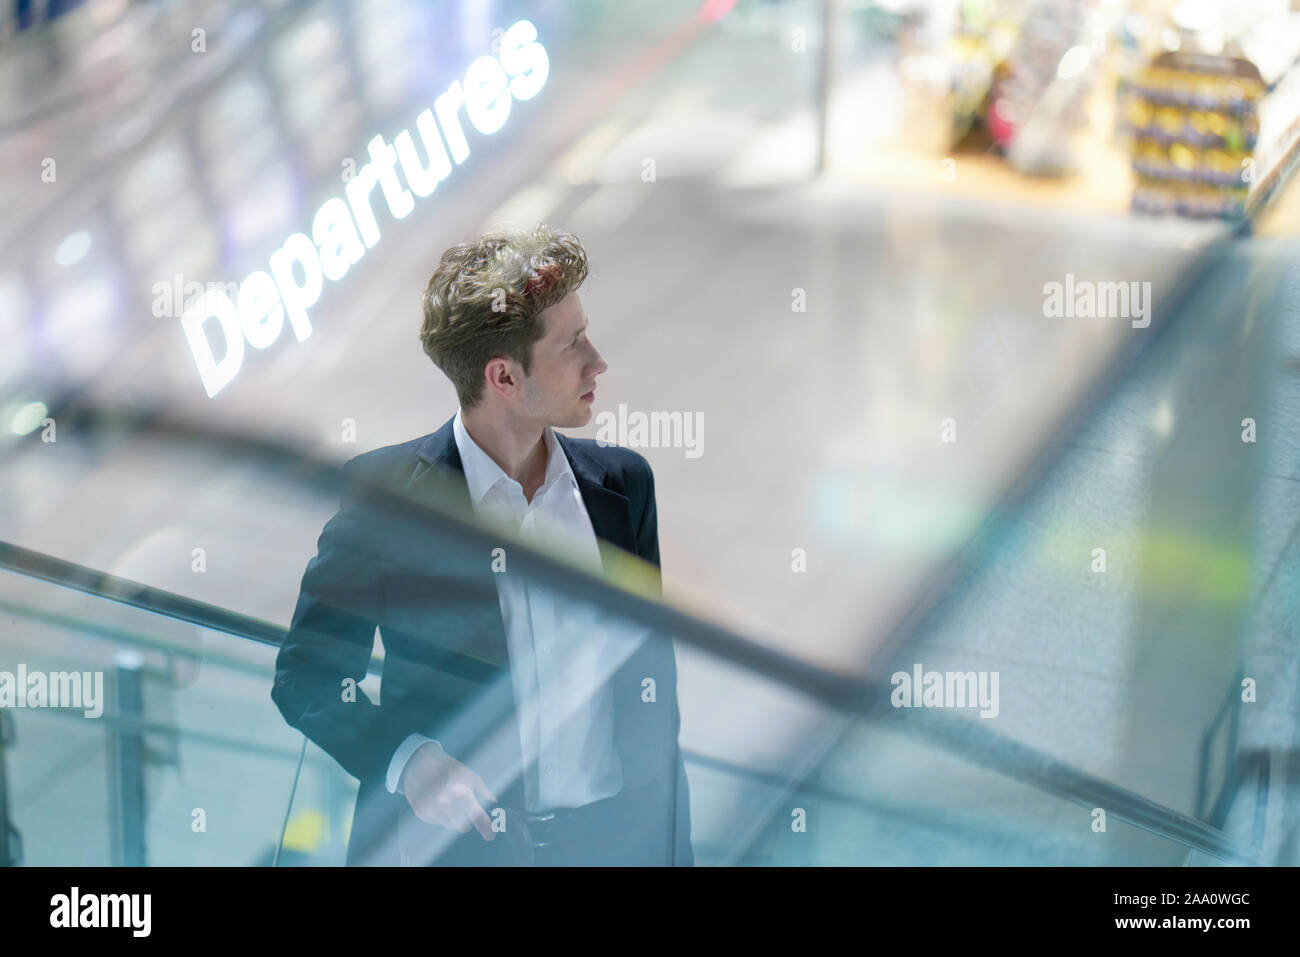 Junge Geschäftsmann im Anzug auf einer Rolltreppe am Flughafen mit seinem Gepäck, unscharfen Hintergrund, double explosure mit Abfahrten Stockfoto